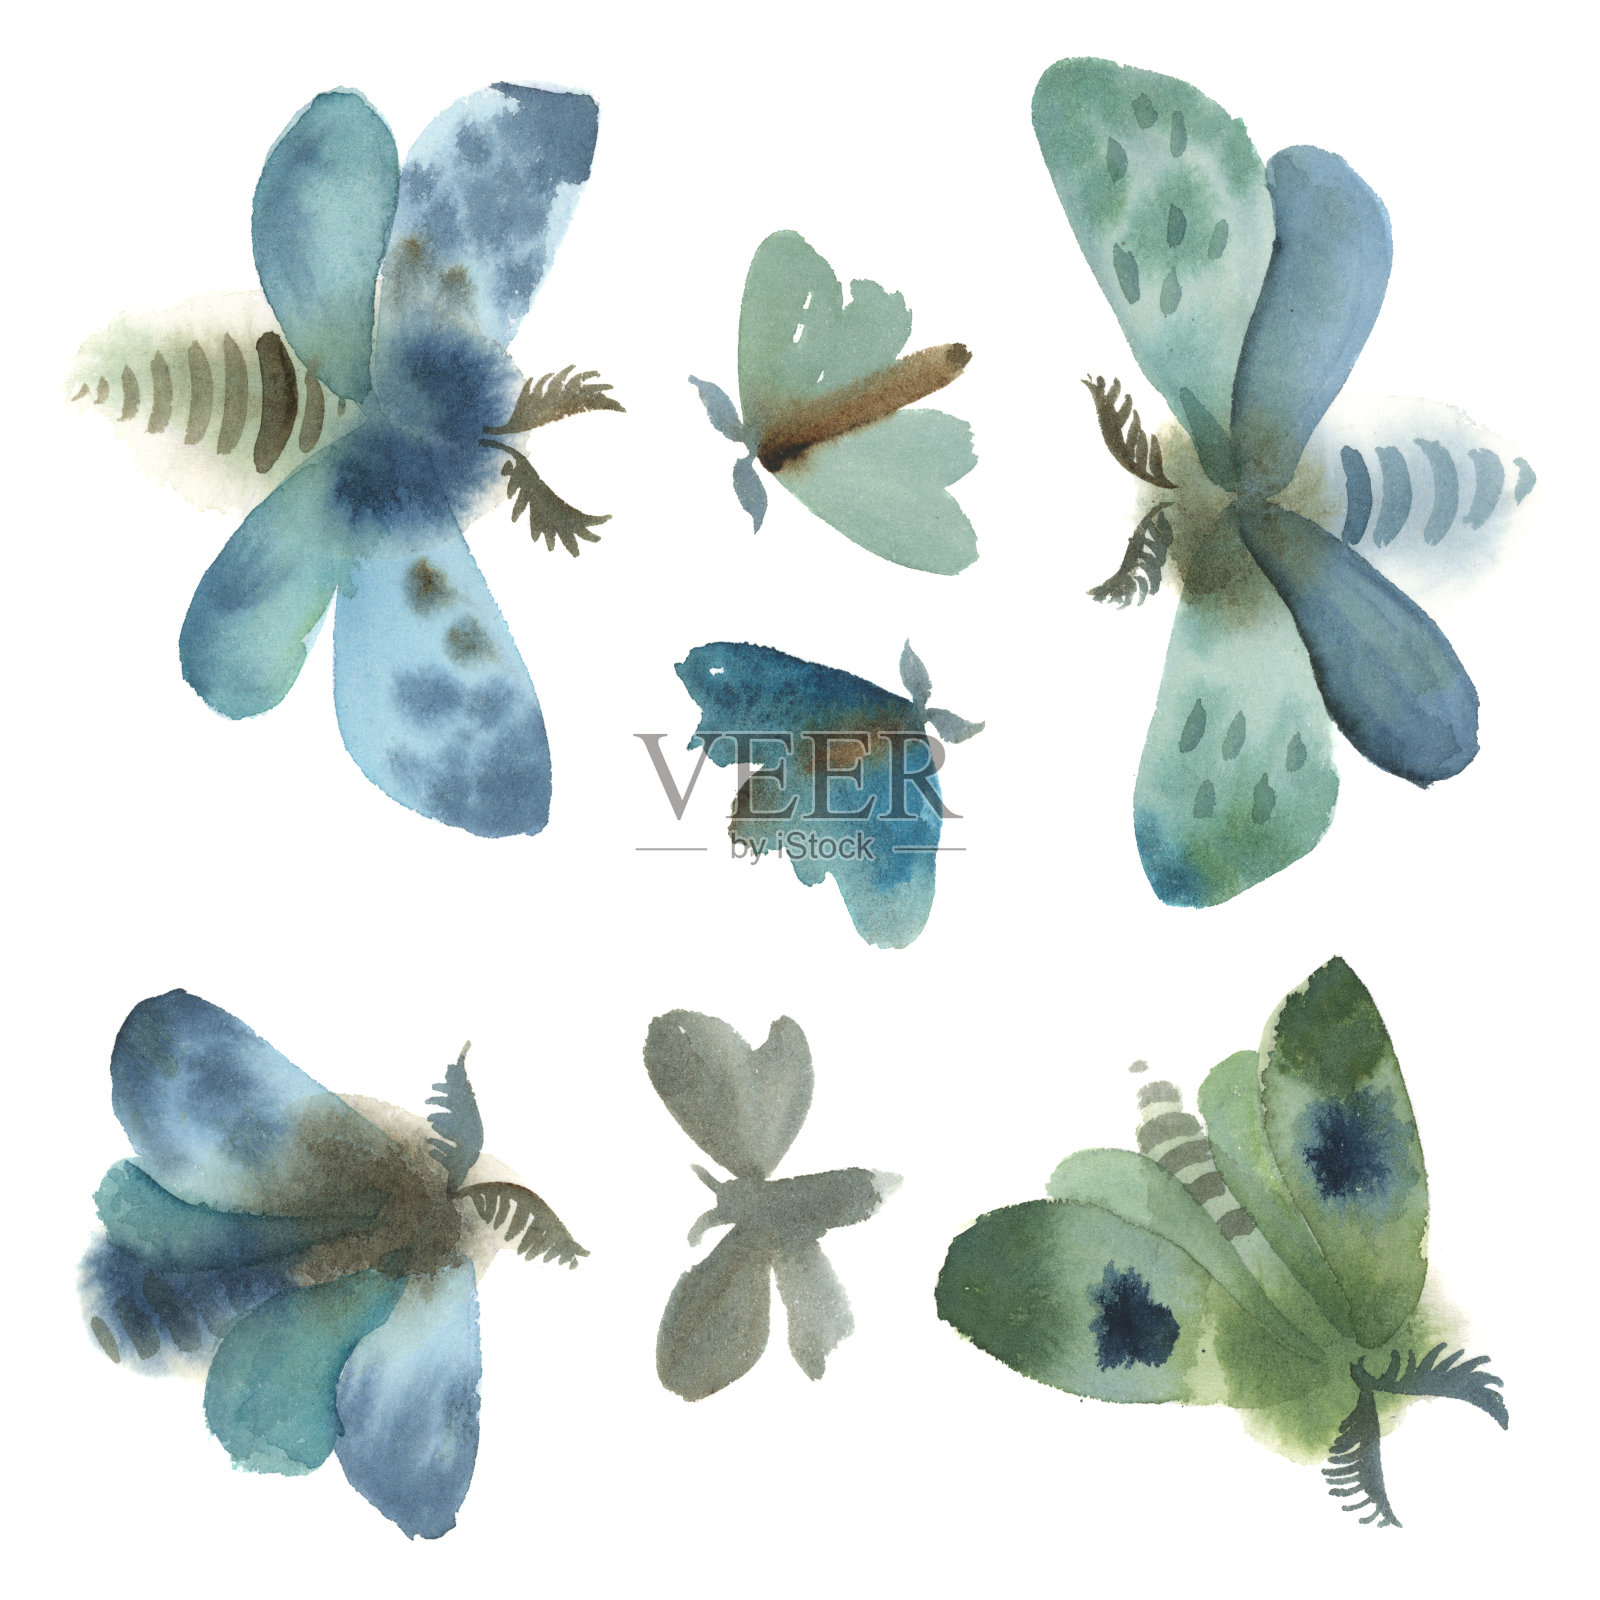 水彩插图。一组灰色，蓝色和绿色的蛾子插画图片素材